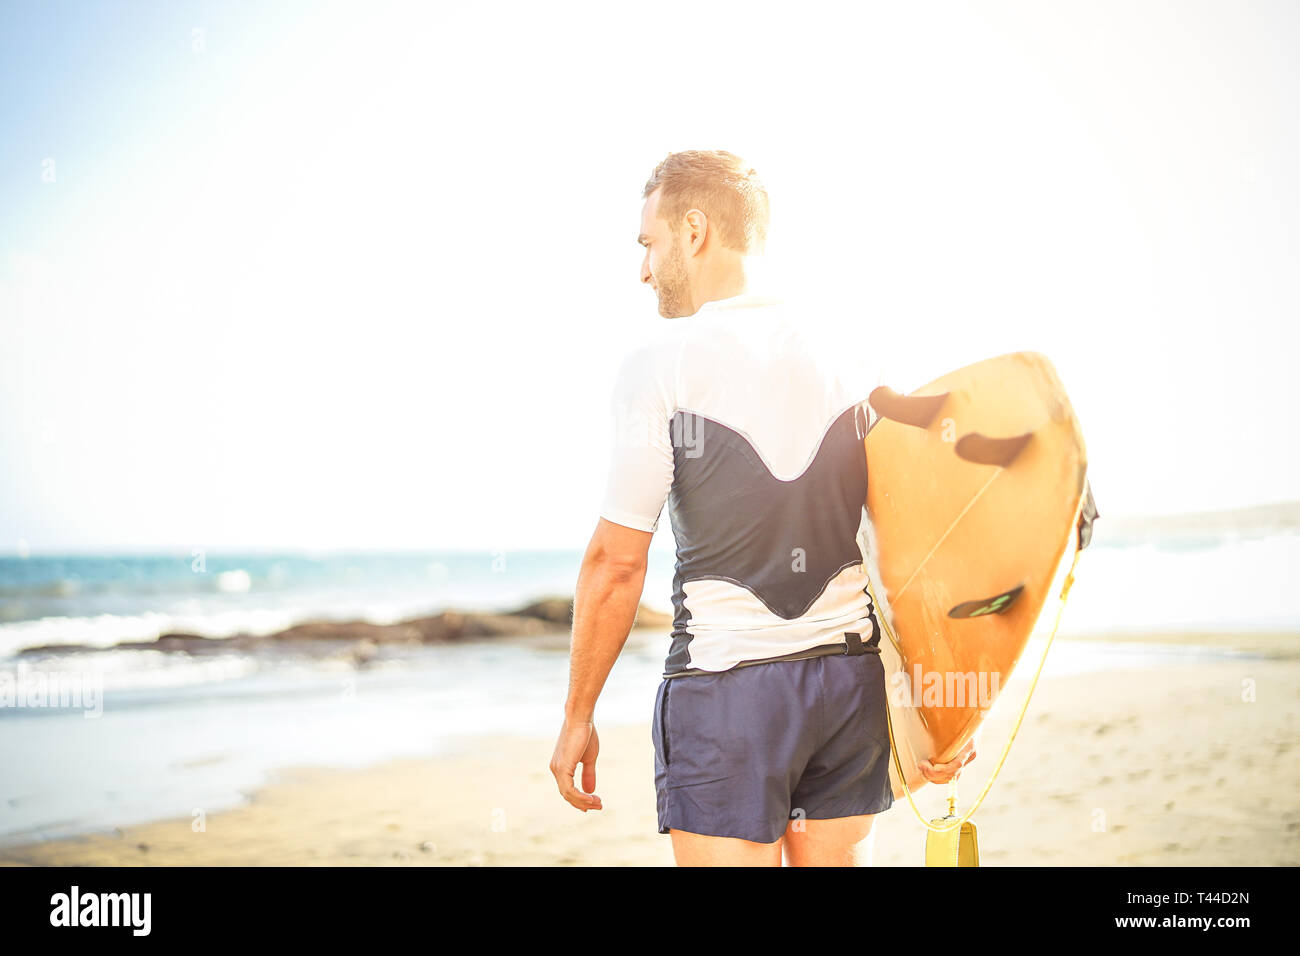 Junge surfer Holding sein Surfbrett auf die Wellen zum Surfen - schöner Mann stehen auf dem Strand bei Sonnenuntergang Training zu surfen. Stockfoto